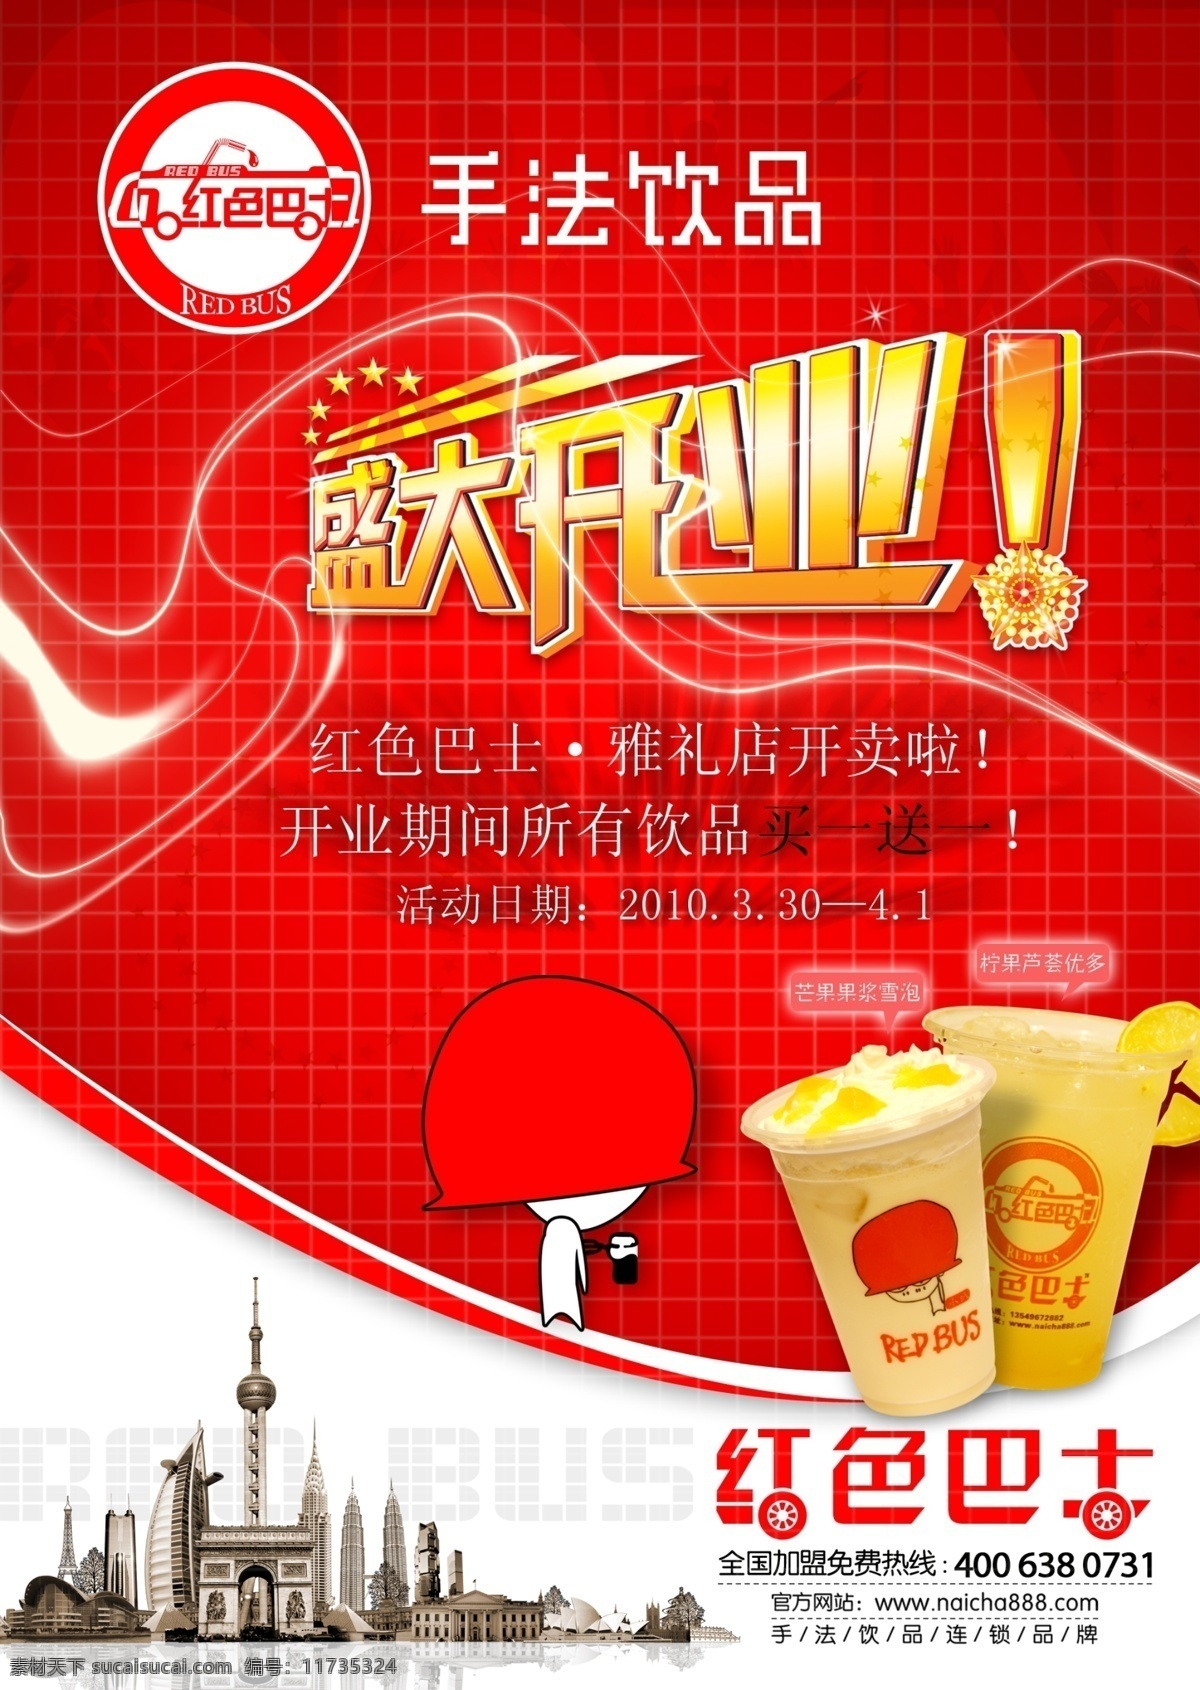 东方明珠 广告设计模板 卡通人 奶茶 盛大开业 源文件 奶茶店 开业 海报 模板下载 红色吧士 红色吧士奶茶 矢量图 日常生活